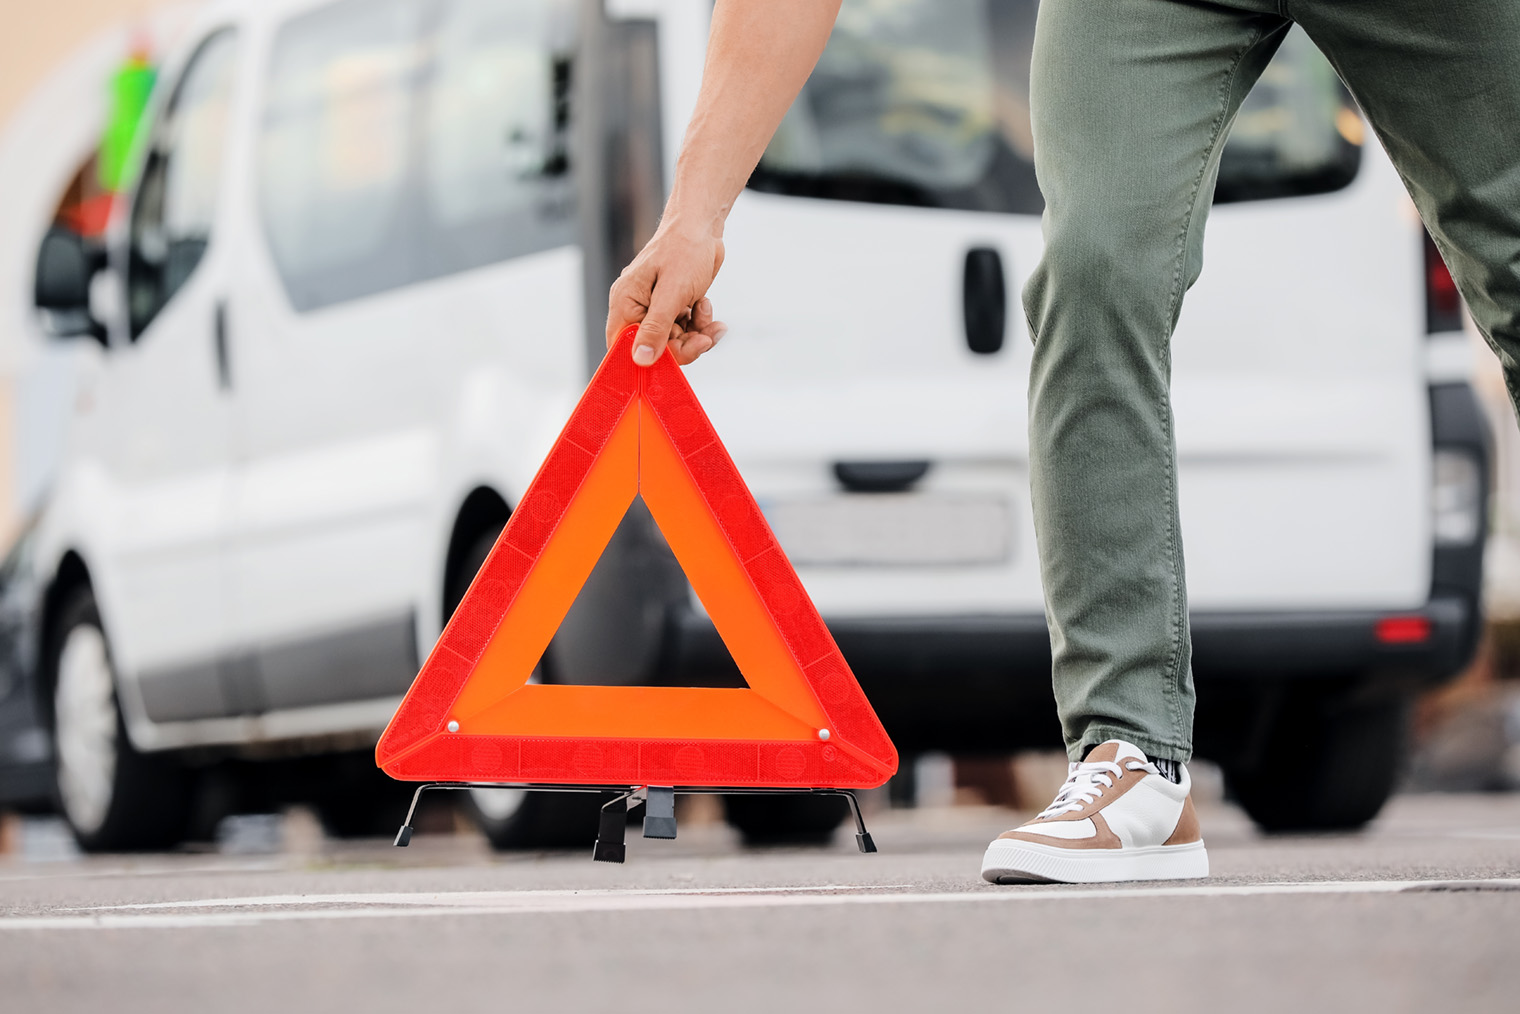 После аварии водитель обязан выставить знак аварийной остановки возле машины. Фотография: Pixel⁠-⁠Shot / Shutterstock